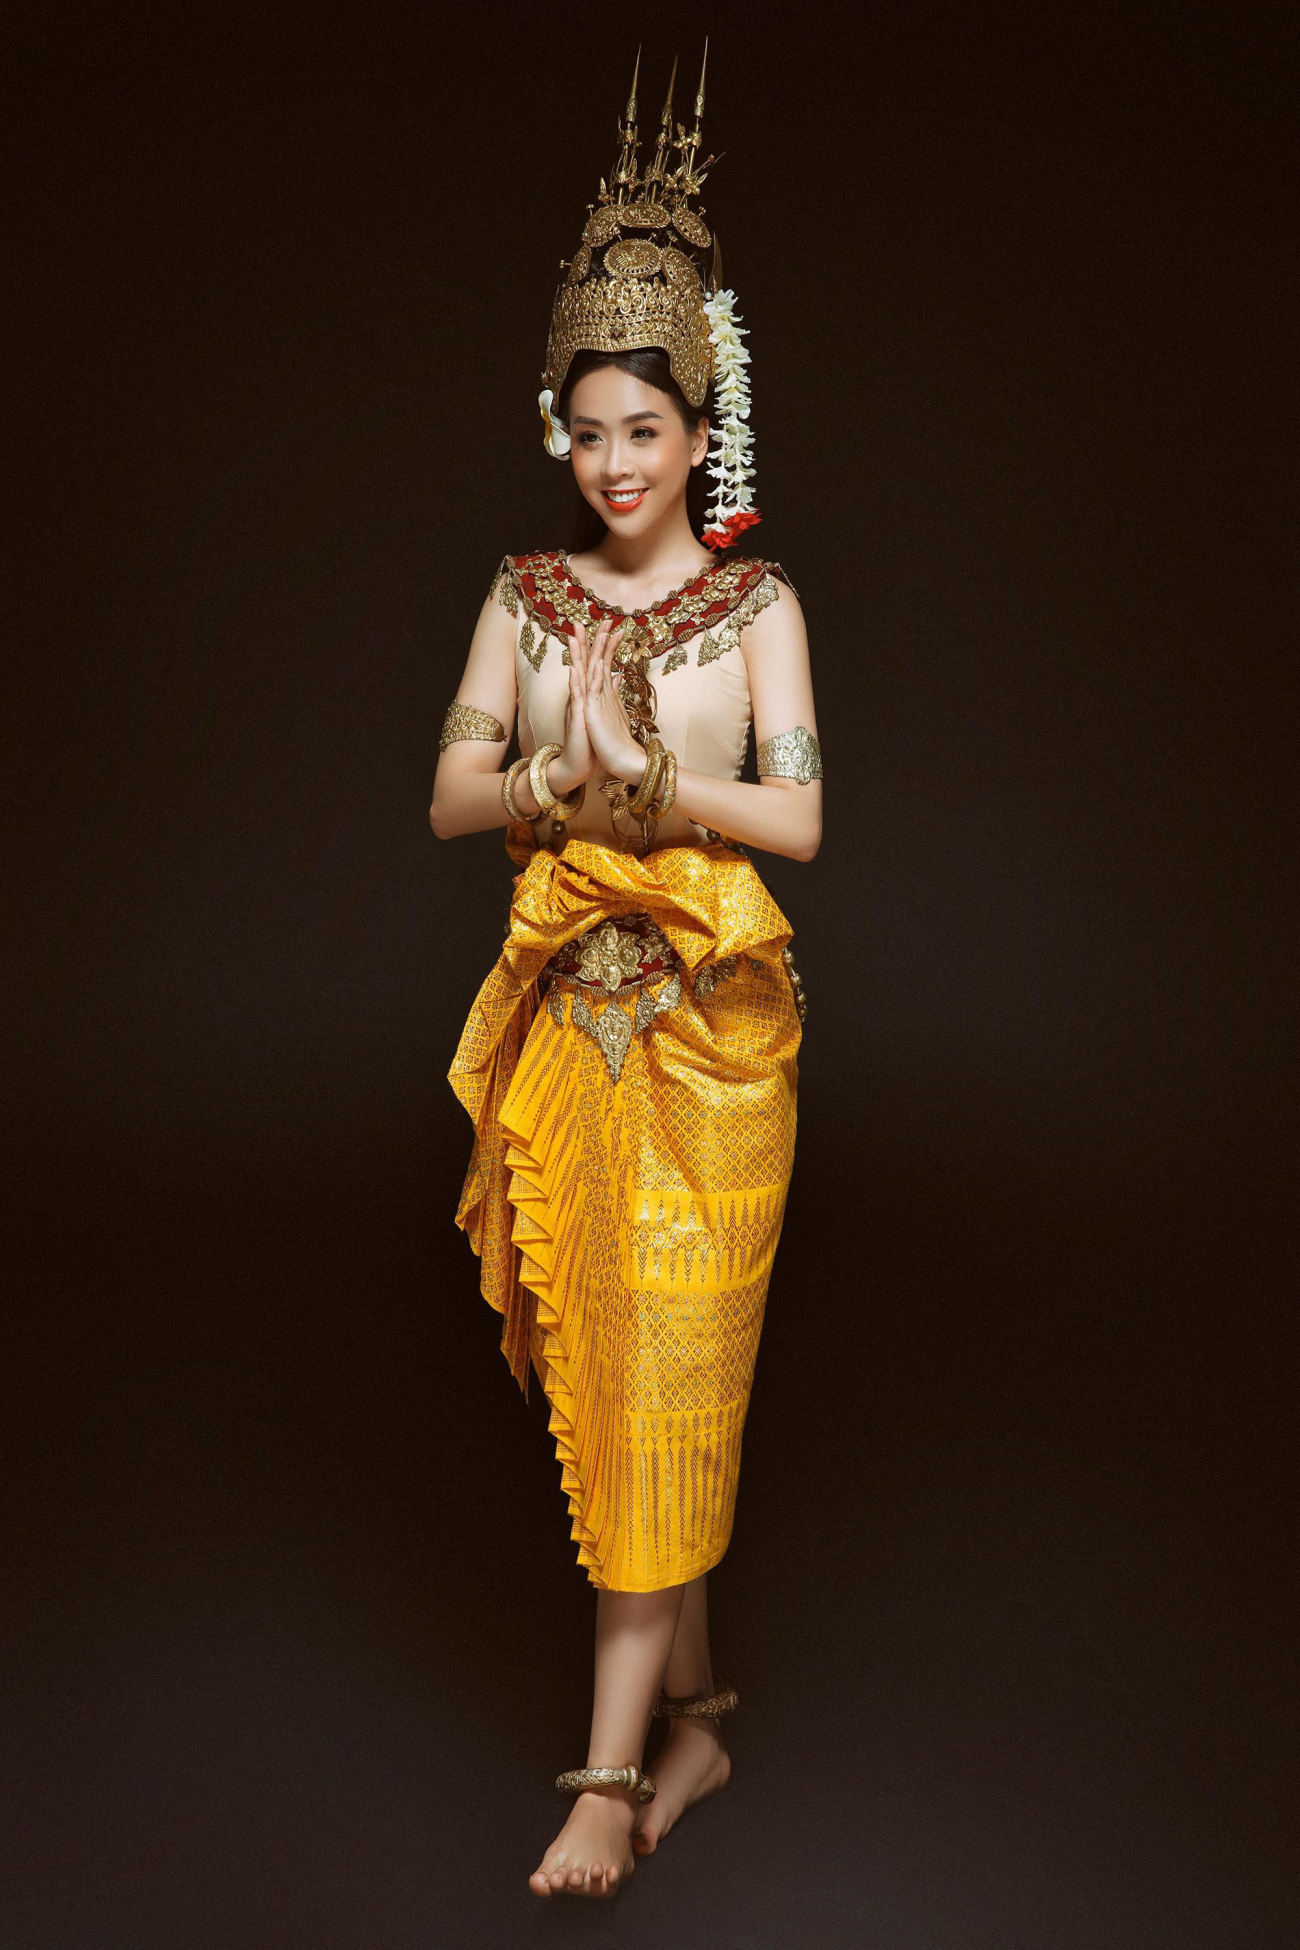 Hoa khôi sinh viên tp cần thơ đẹp dịu dàng với trang phục khmer - 1